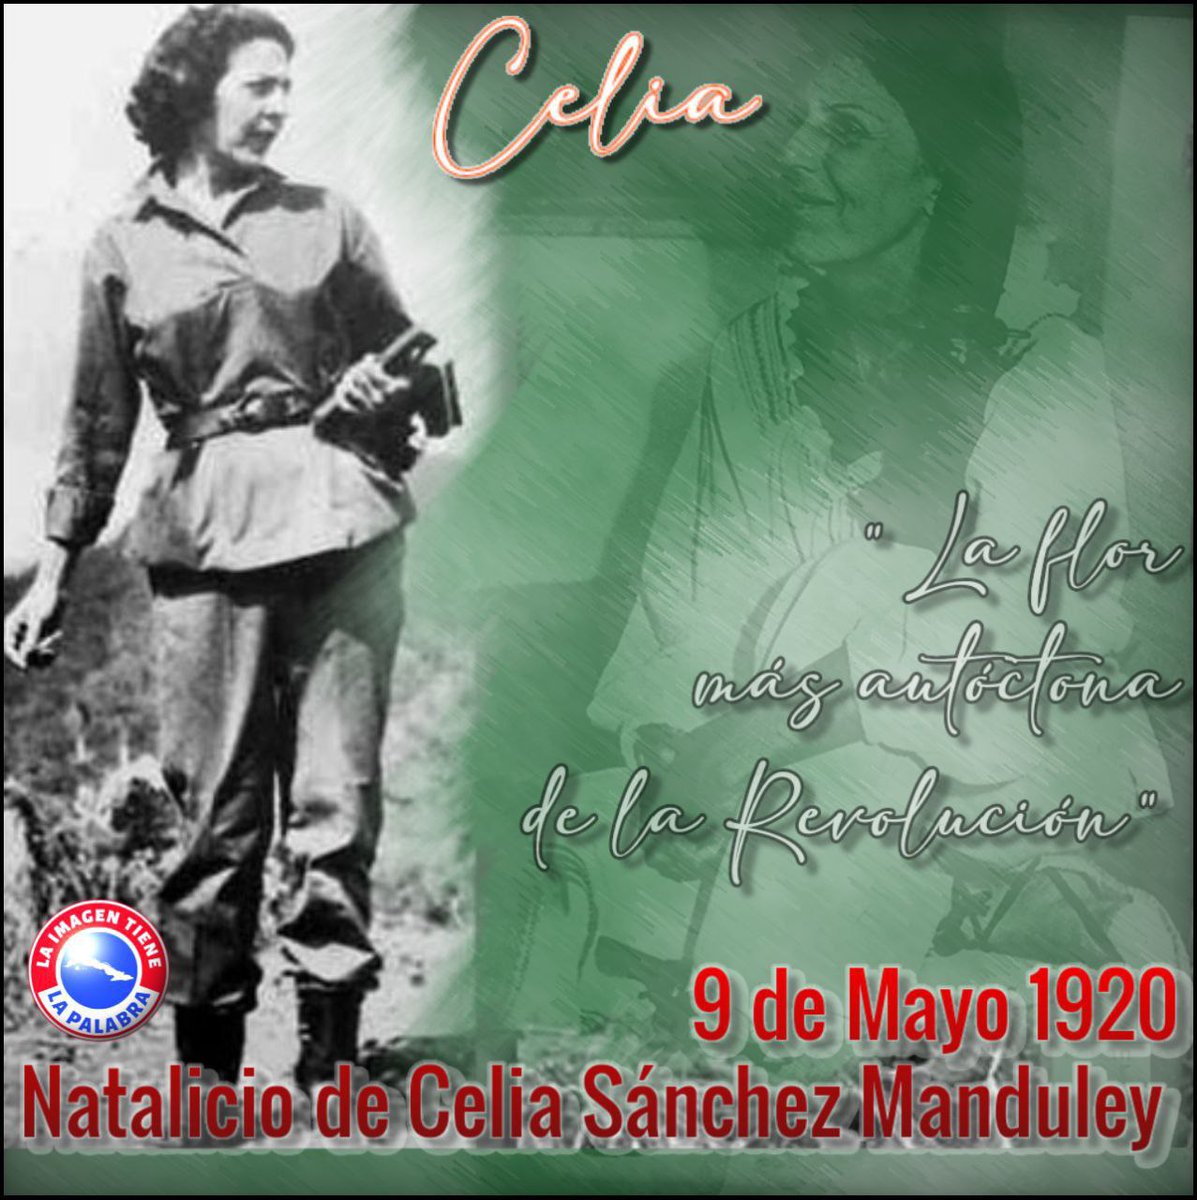 9 de mayo, aniversario 104 del natalicio de Celia Sanchez Manduley, valerosa mujer y destacada revolucionaria. Celia “no fue la sombra de Fidel, sino la luz” #CubaViveEnSuHistoria #DeZurdaTeam